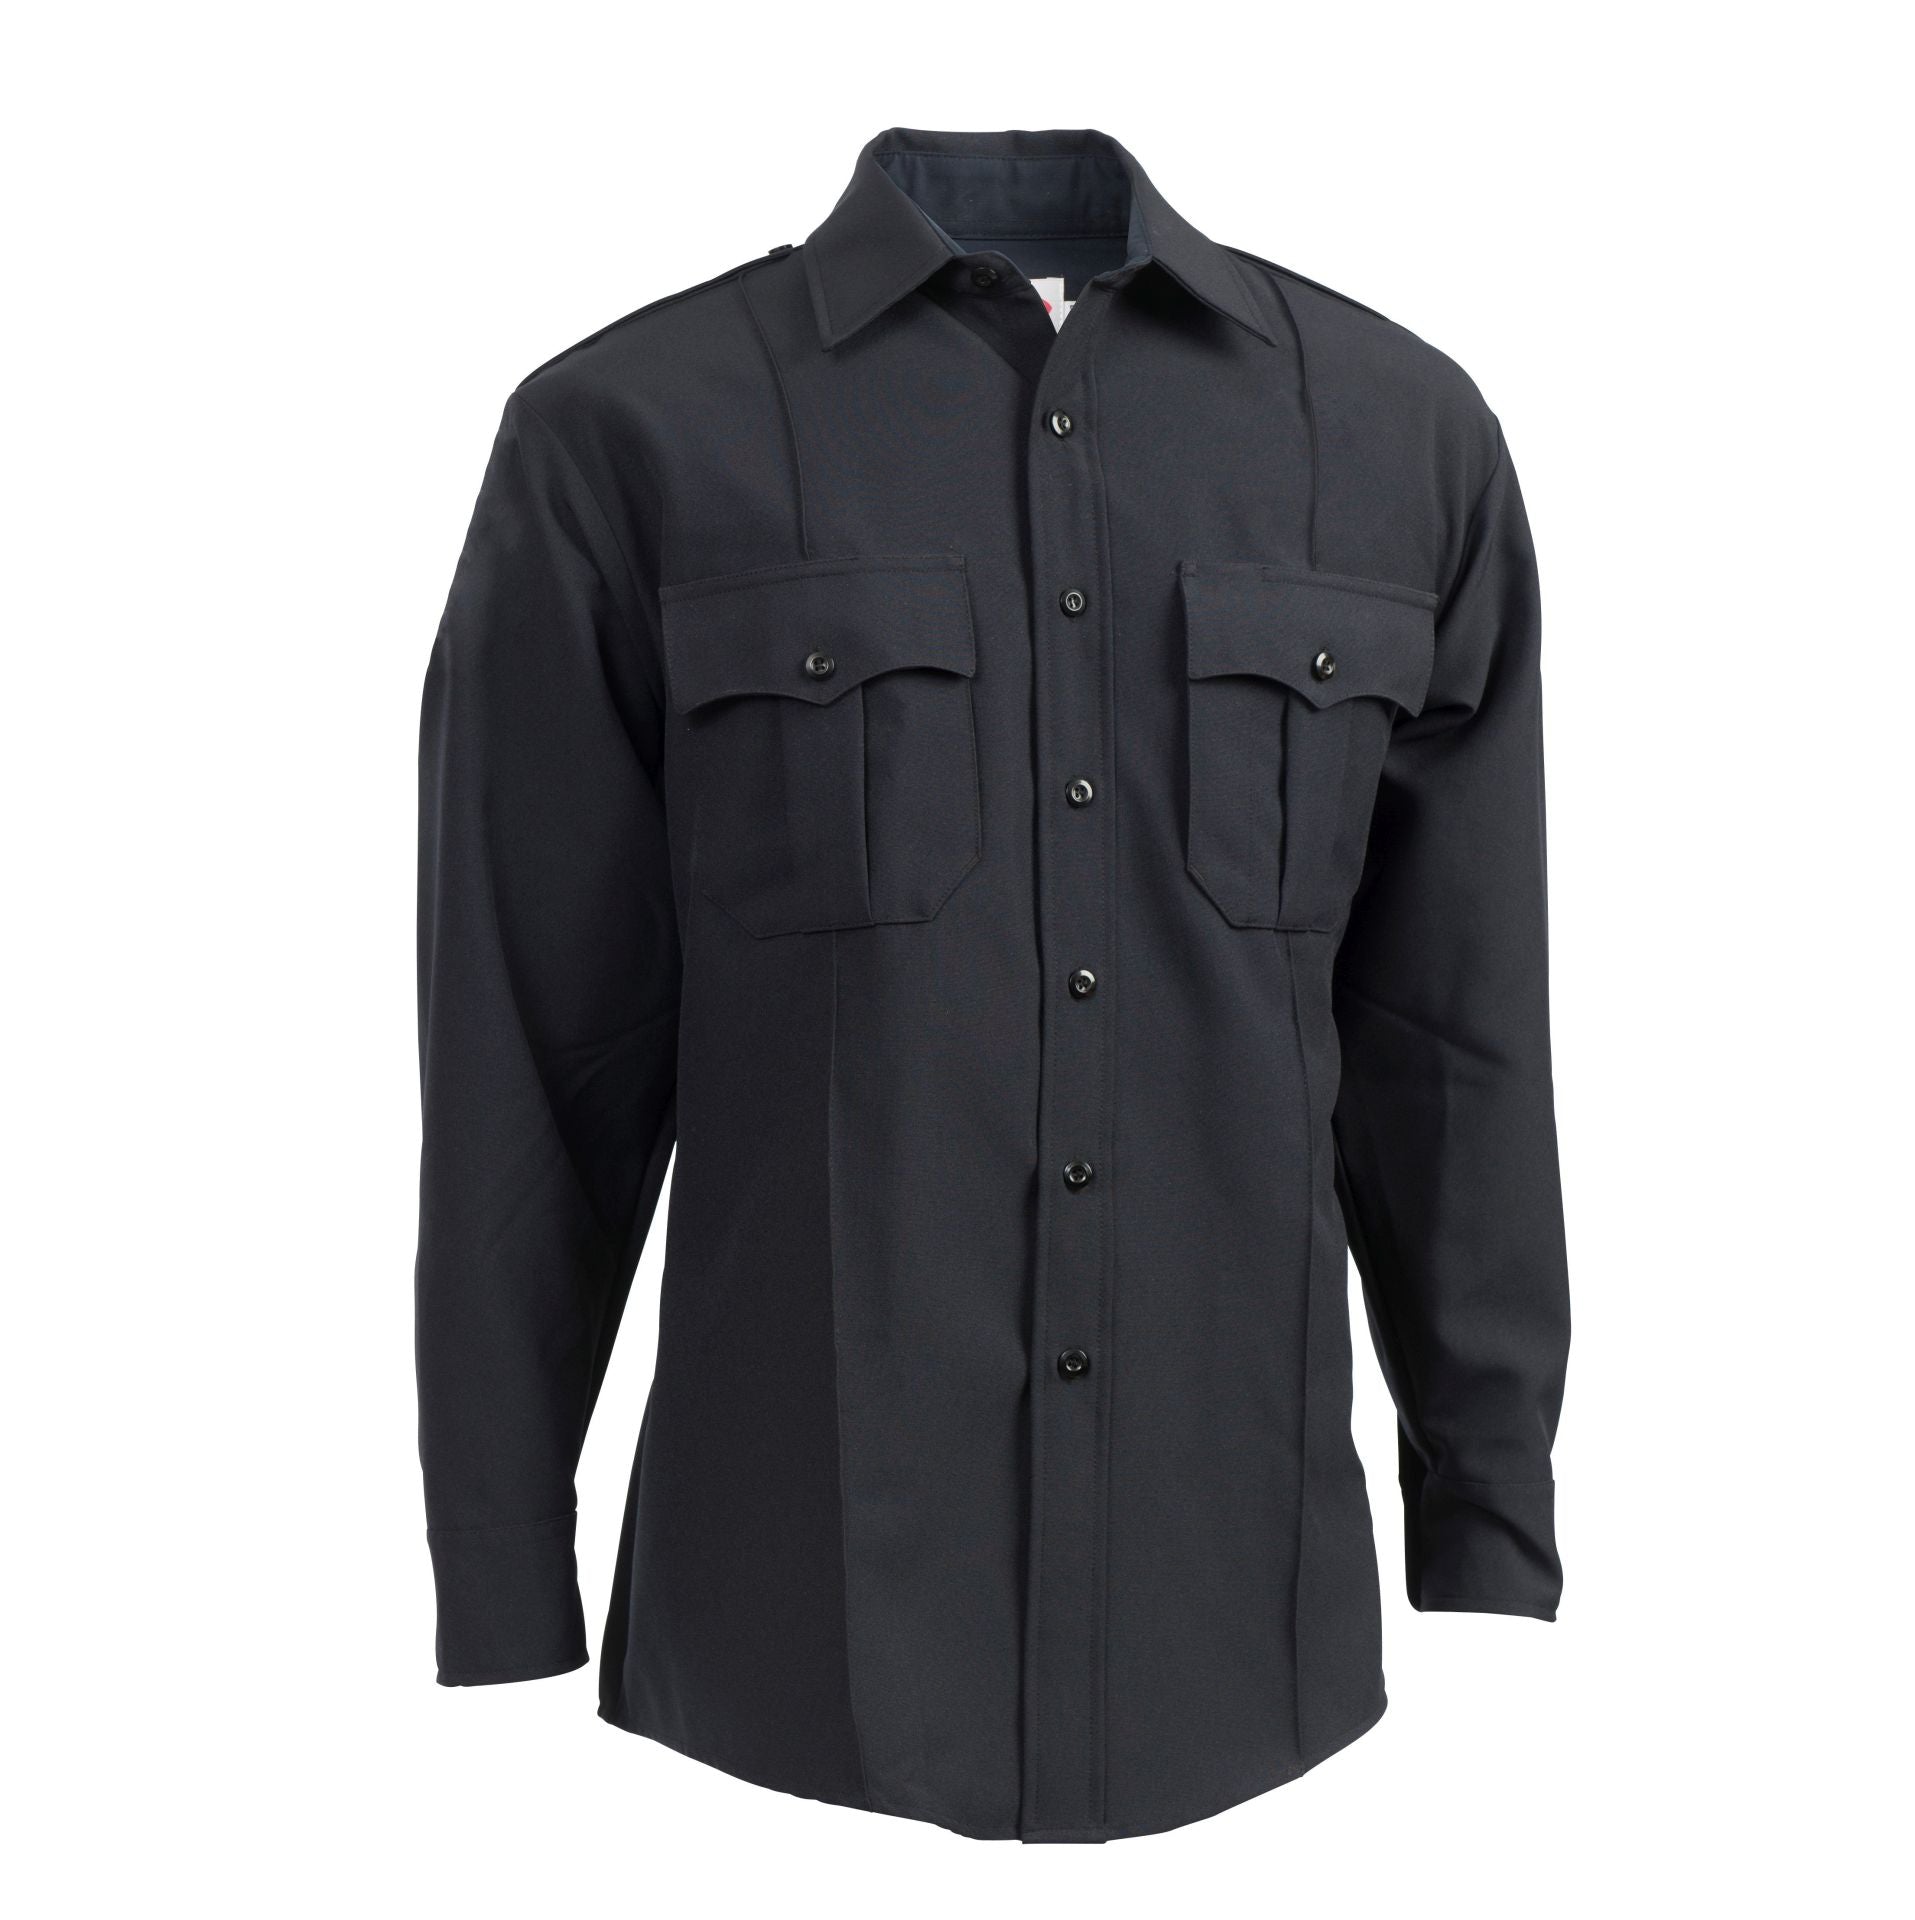 TexTrop2 Long Sleeve Shirt with Hidden Zipper-Mens-